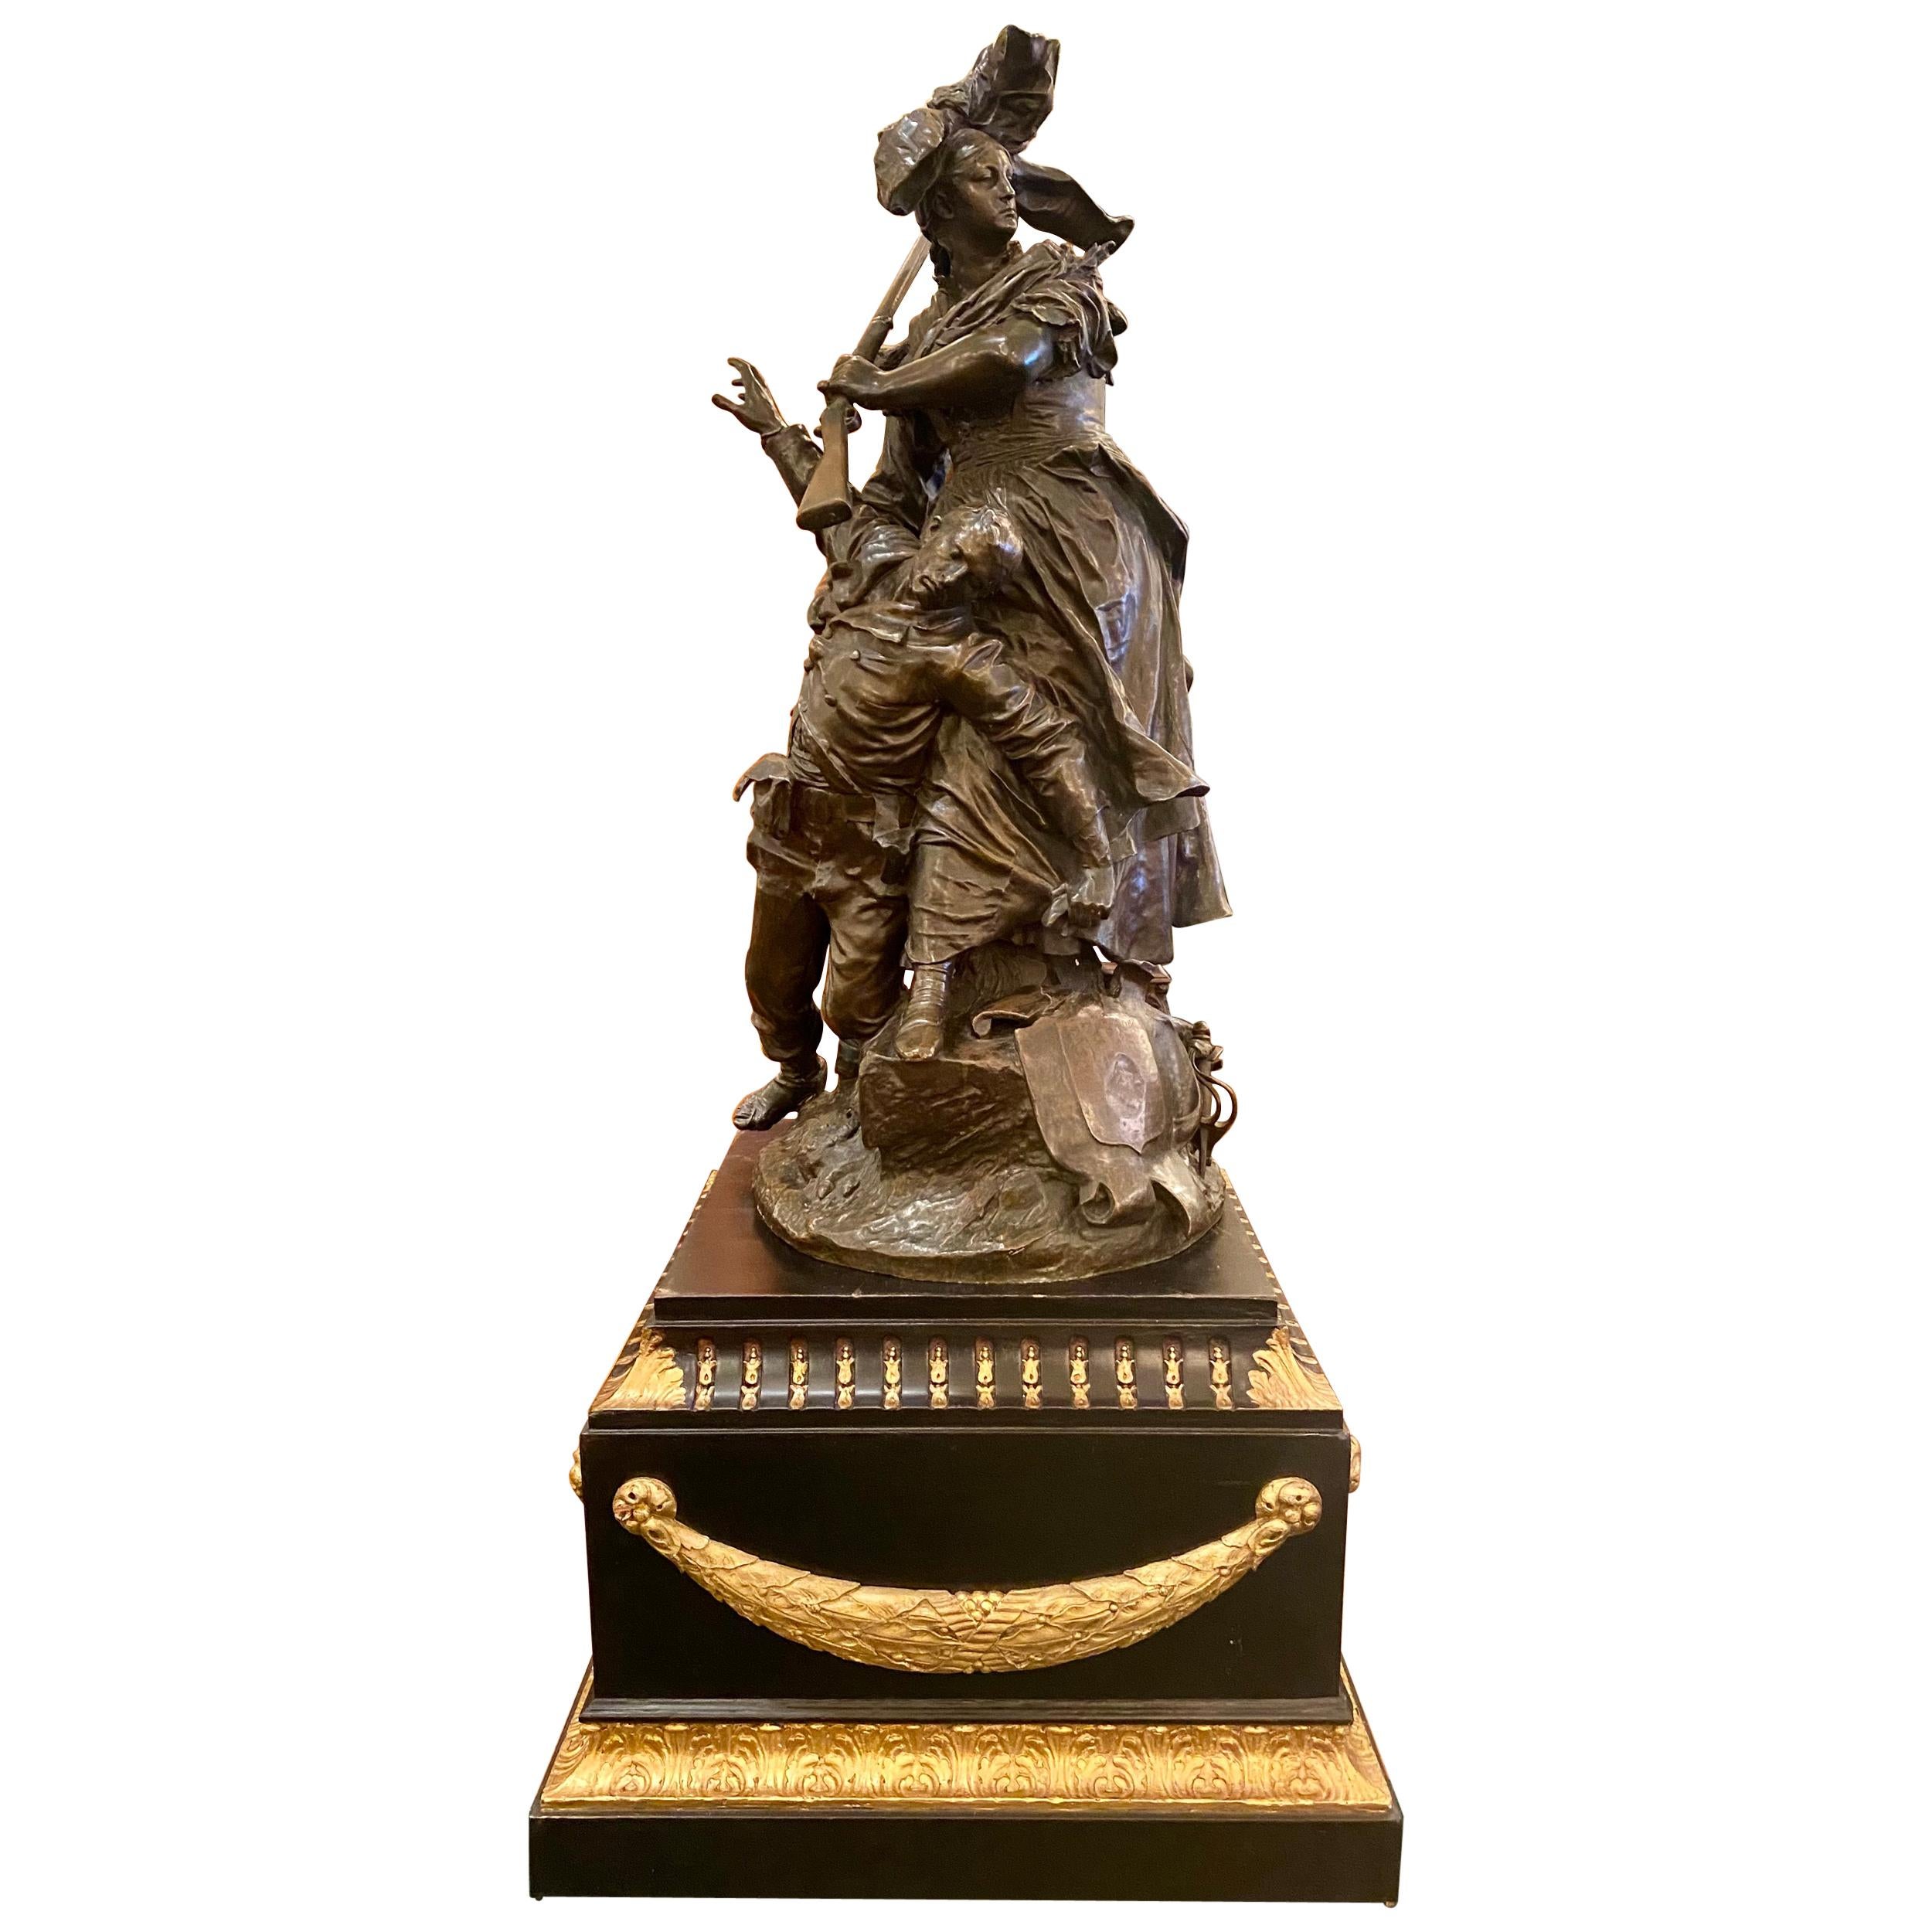 Antique French Barbedienne Bronze Sculpture "Quand Même" by Antonin Mercié, 1884